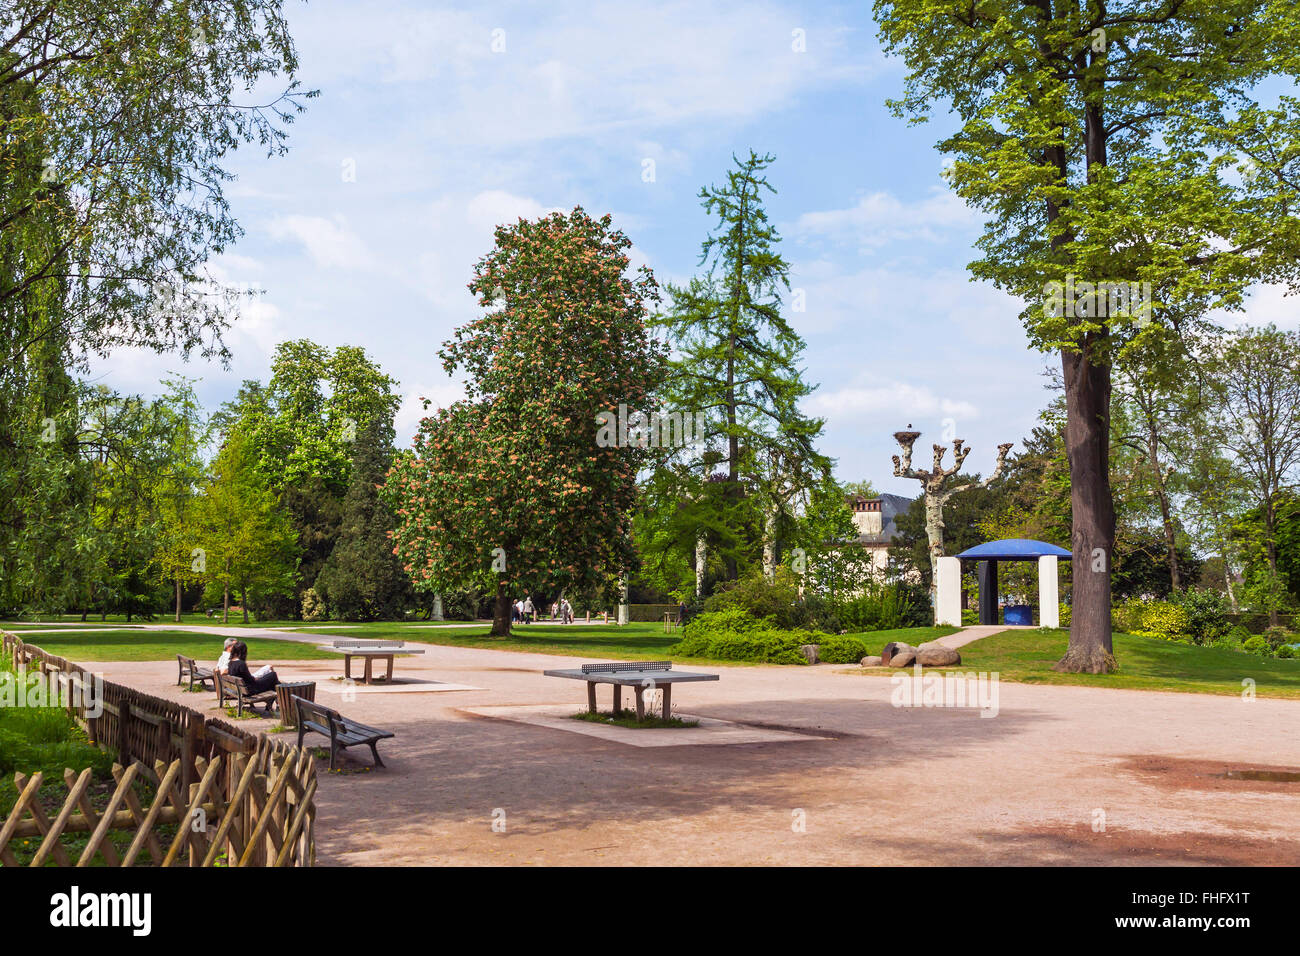 Parc de l'Orangerie, un parc public dans la ville de Strasbourg. Situé en face du Palais de l'Europe Banque D'Images